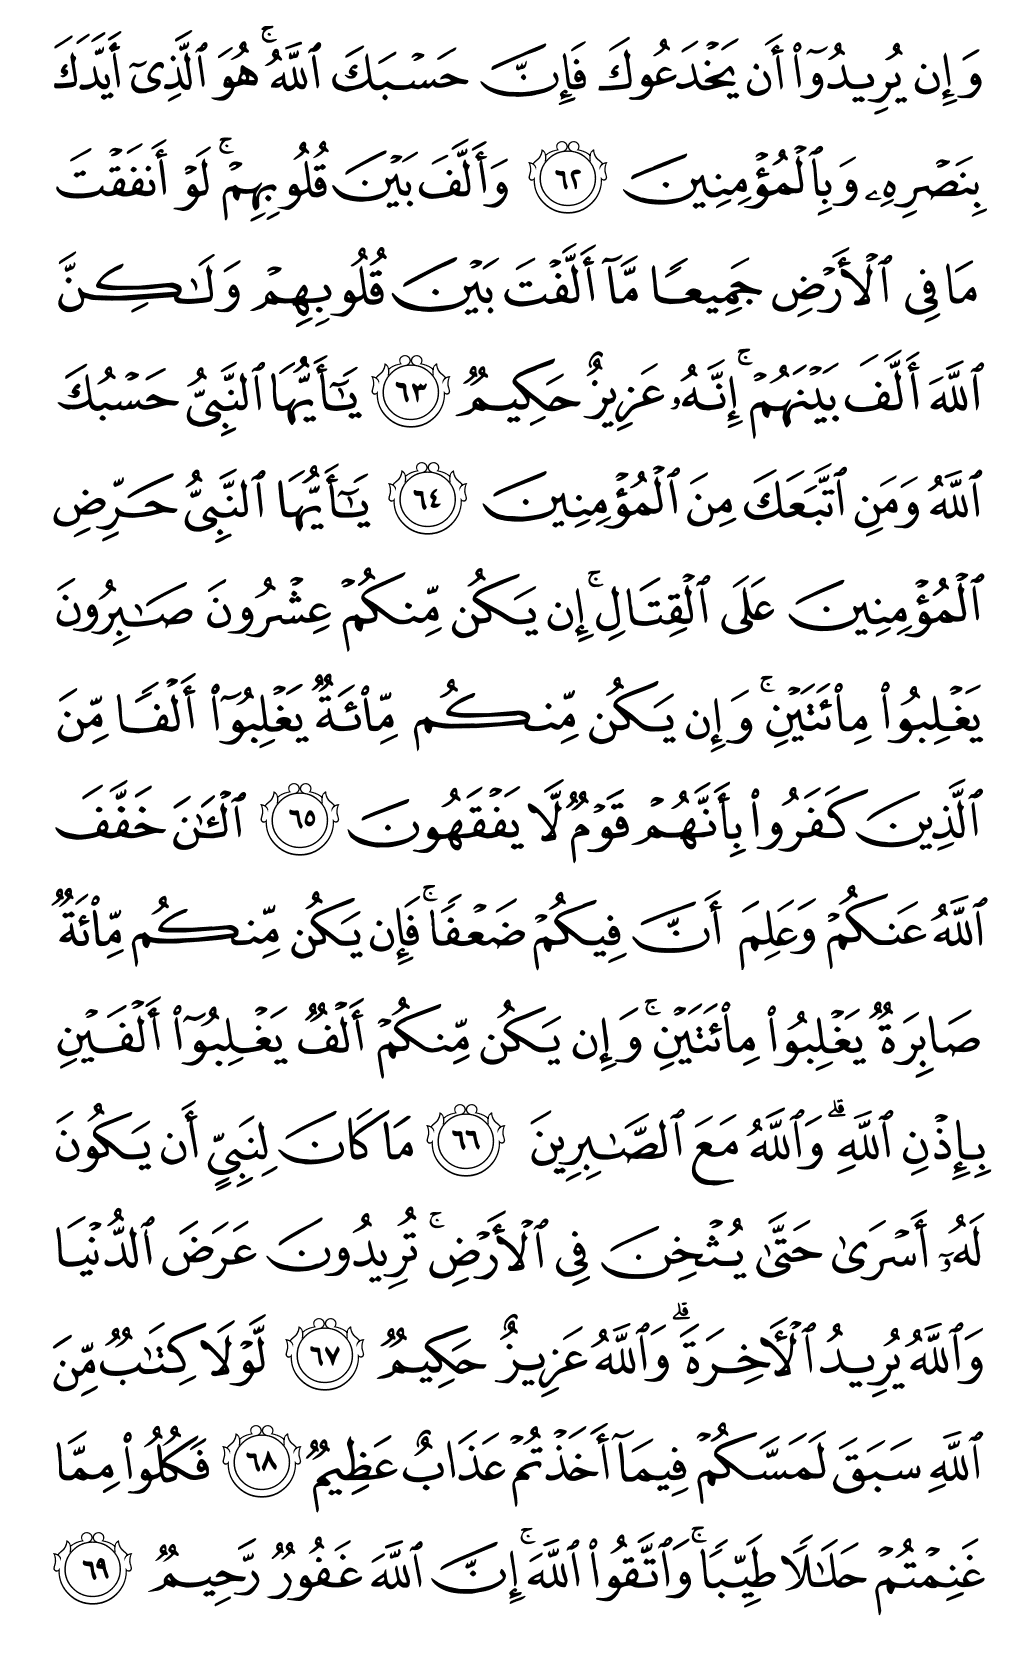 الصفحة رقم 185 من القرآن الكريم